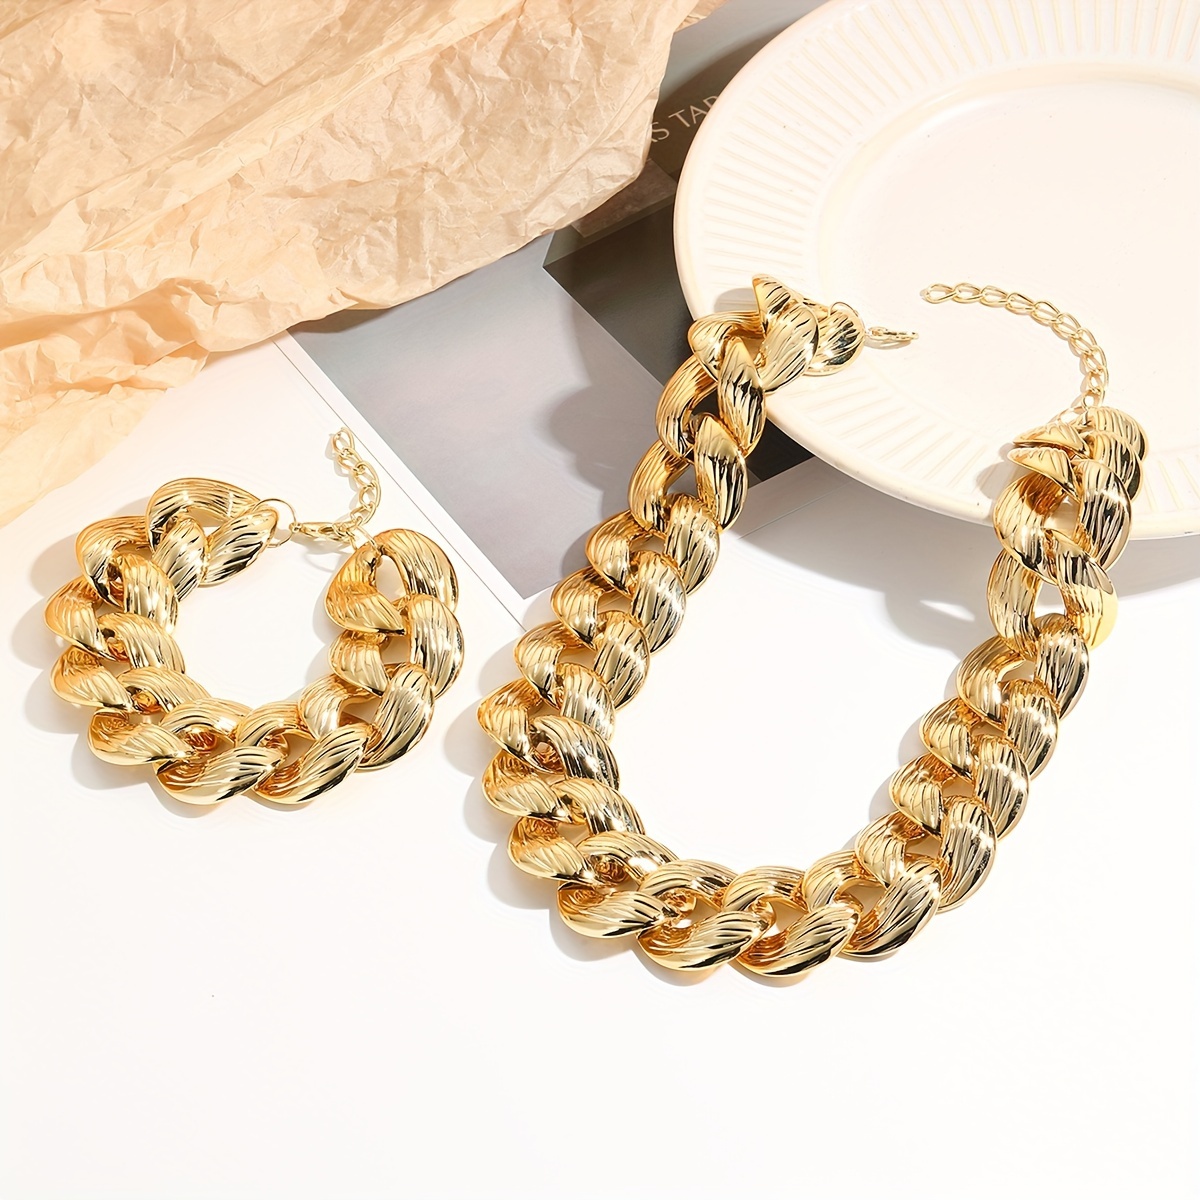 1 Necklace + 1 Bracelet Hip Hop Style Jewelry Set Chunky Cuban